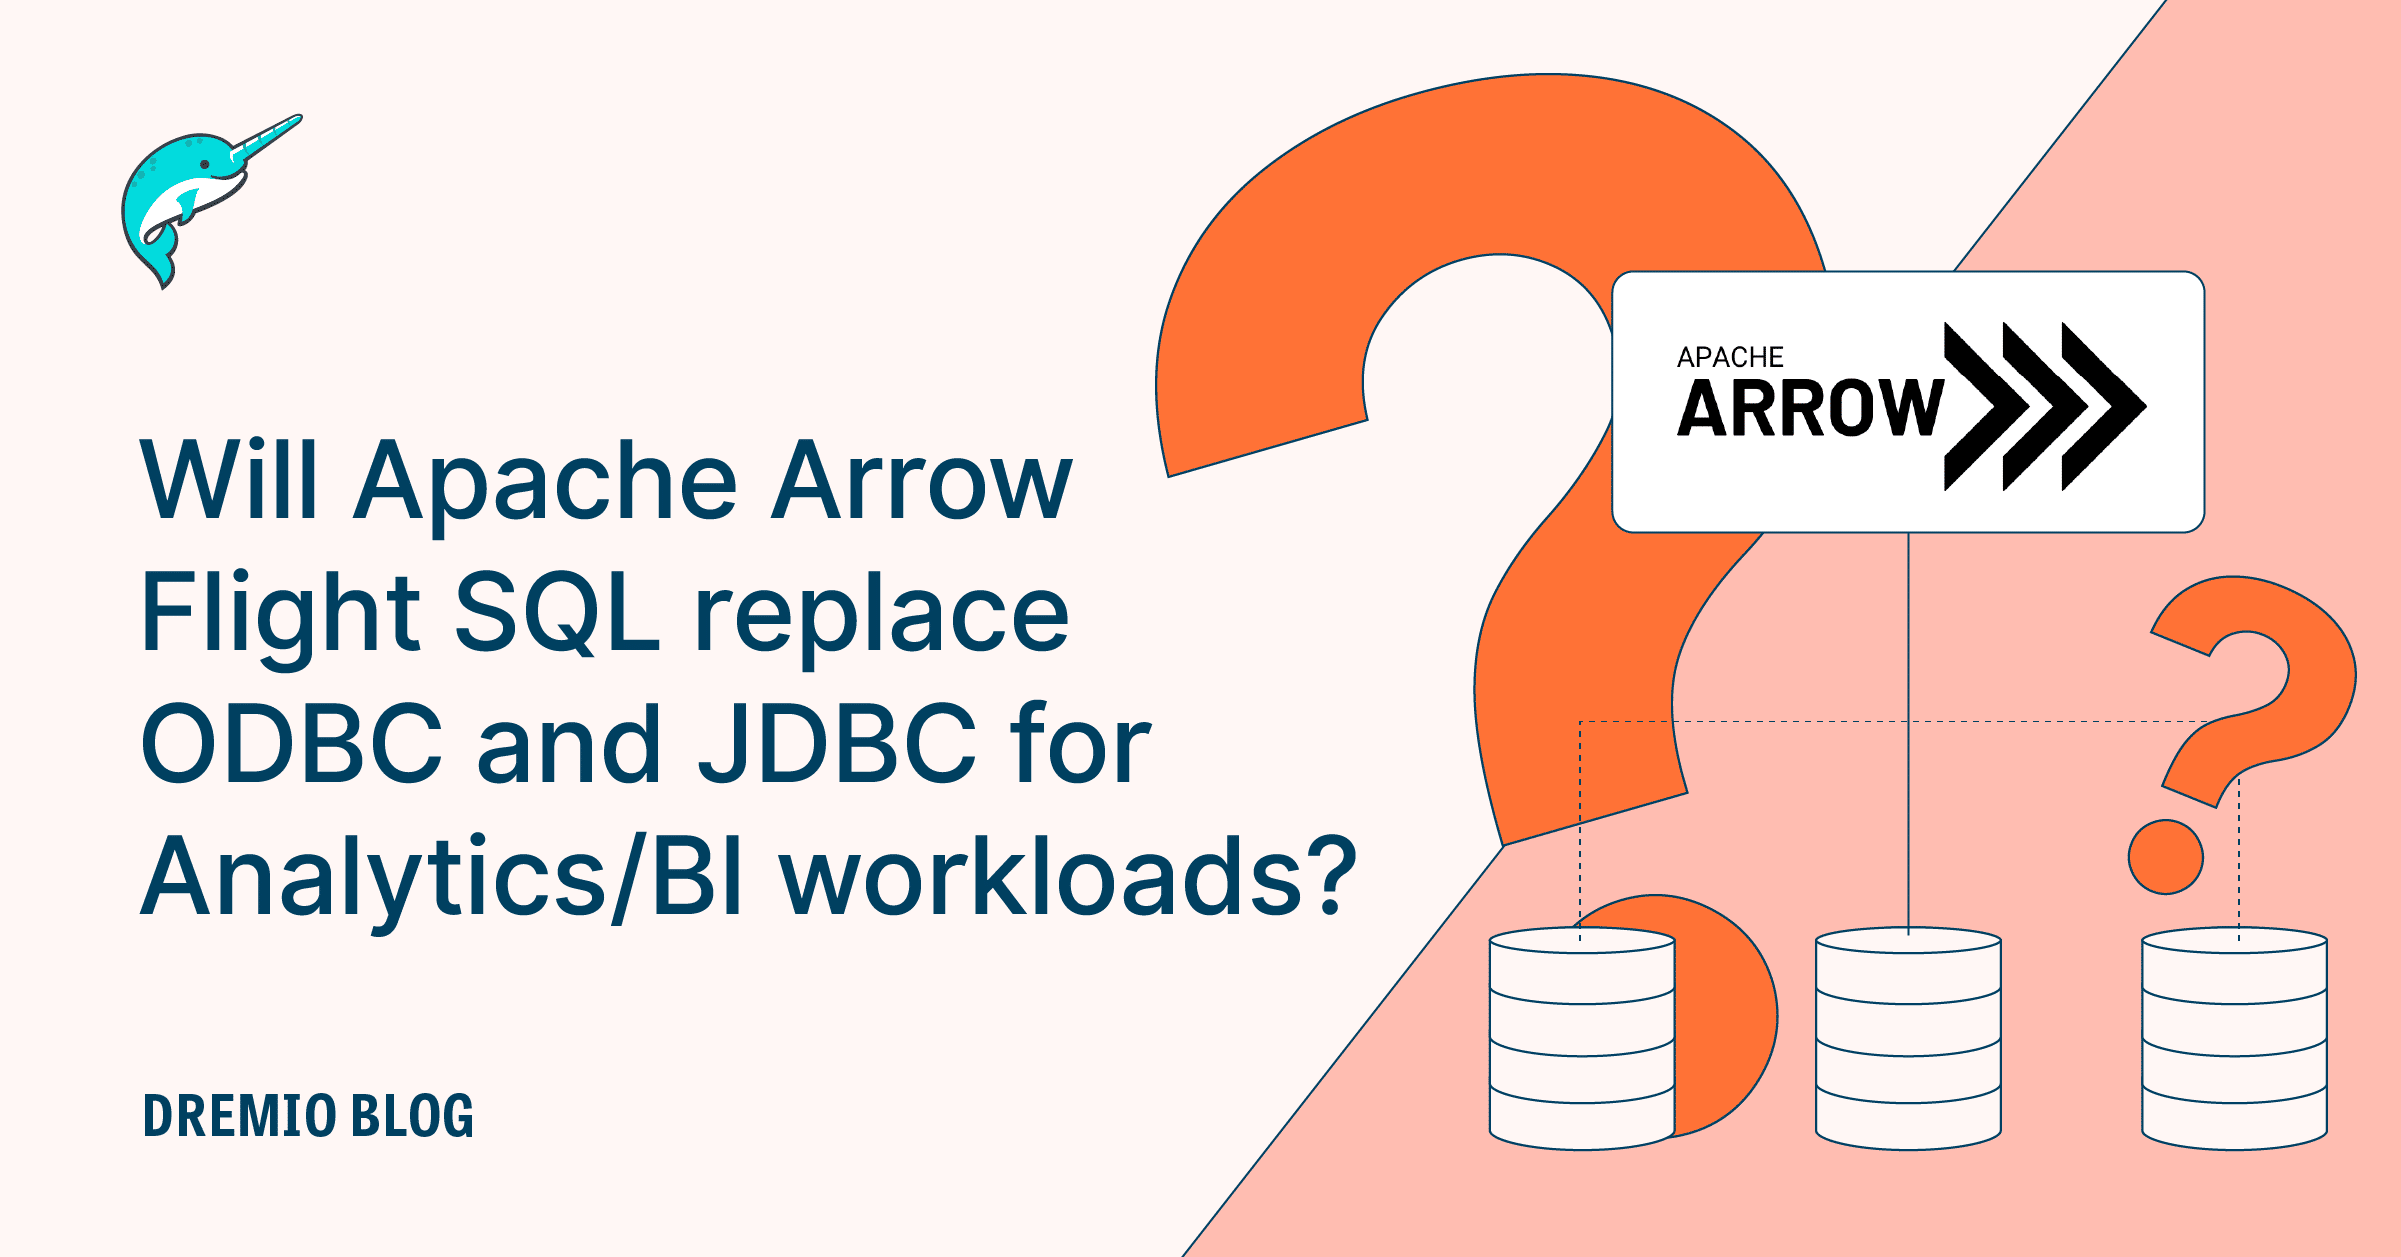 Will Apache Arrow Flight SQL replace ODBC and JDBC for Analytics/BI workloads?